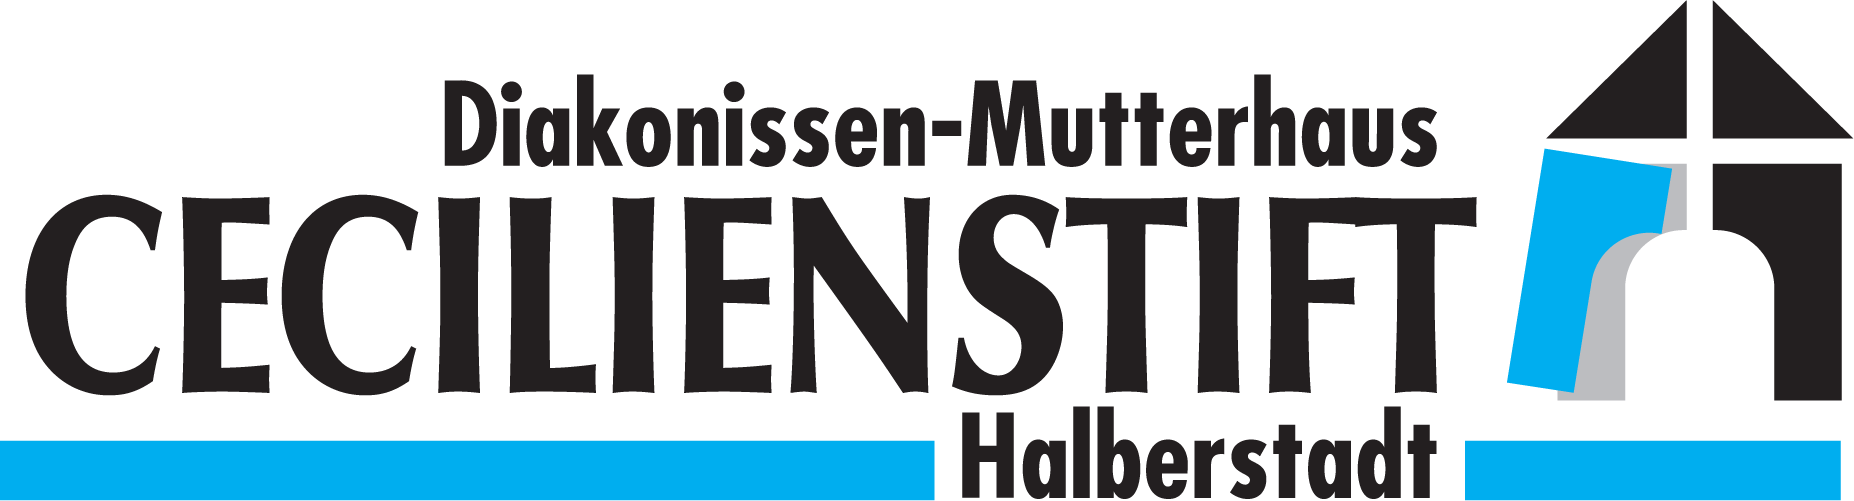 Diakonissen-Mutterhaus Cecilienstift Halberstadt